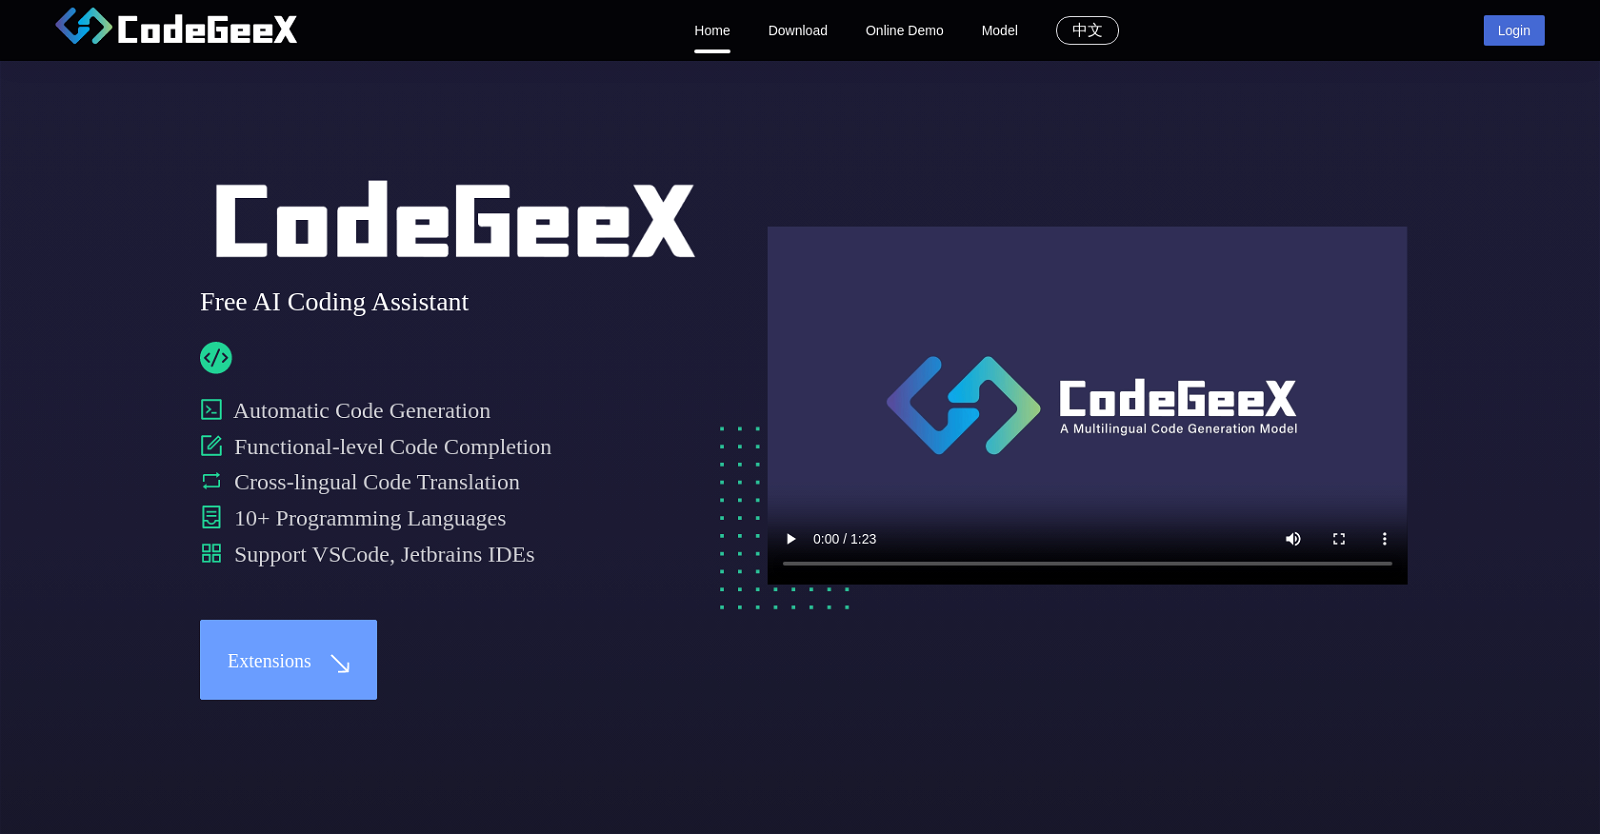 Codegeex website